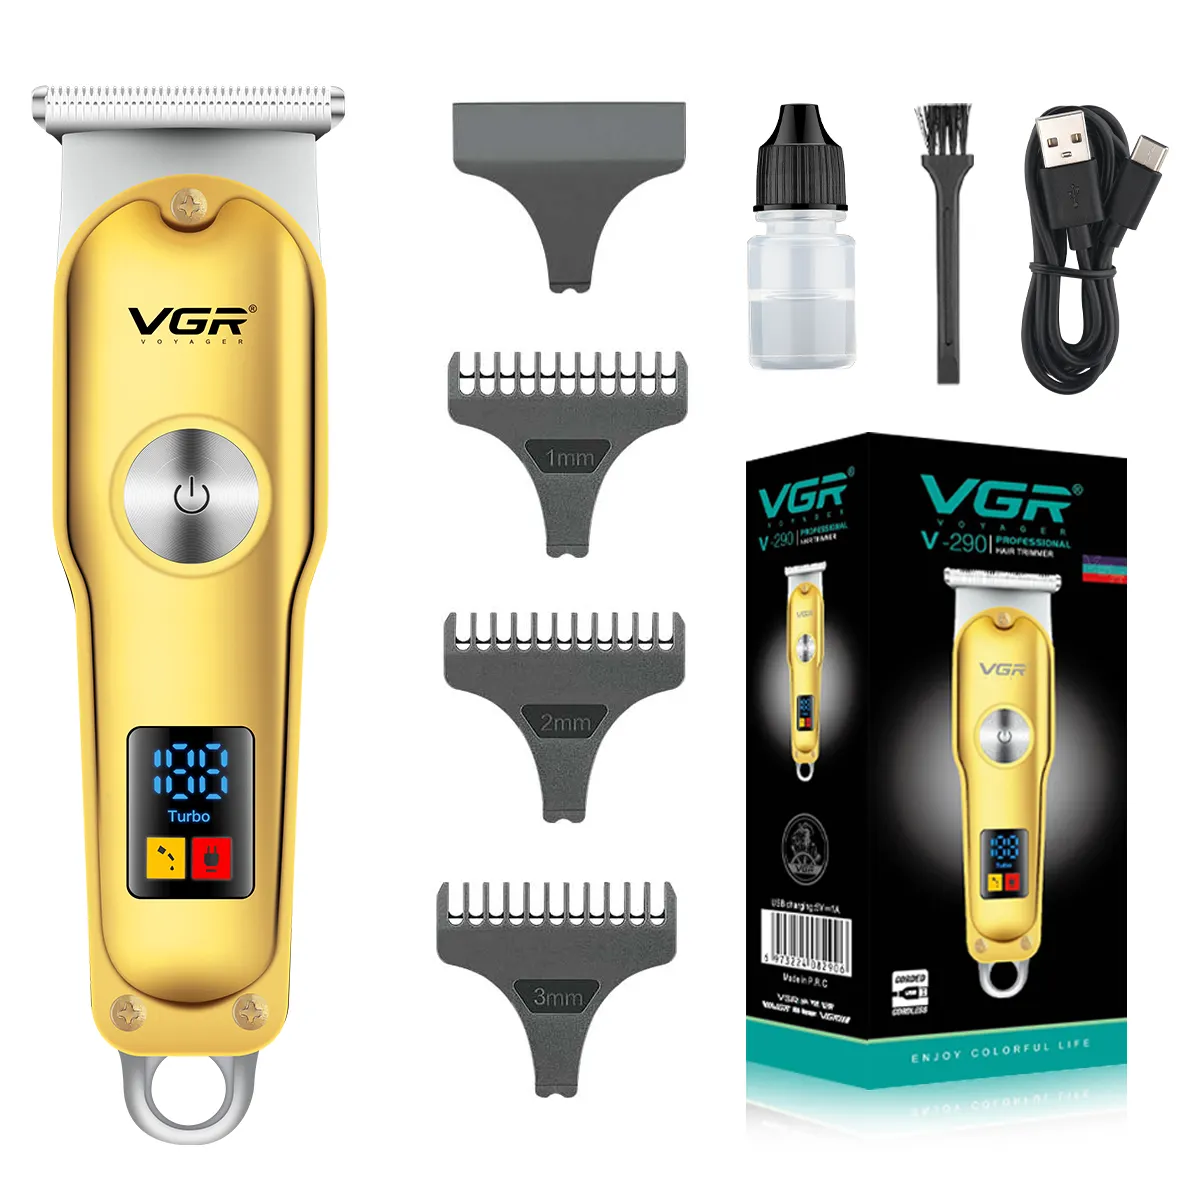 VGR V-290 מקצועי חשמלי נטענת הטוב ביותר שיער גוזם אלחוטי גוזז שיער ספר אפס Yl870 לגברים